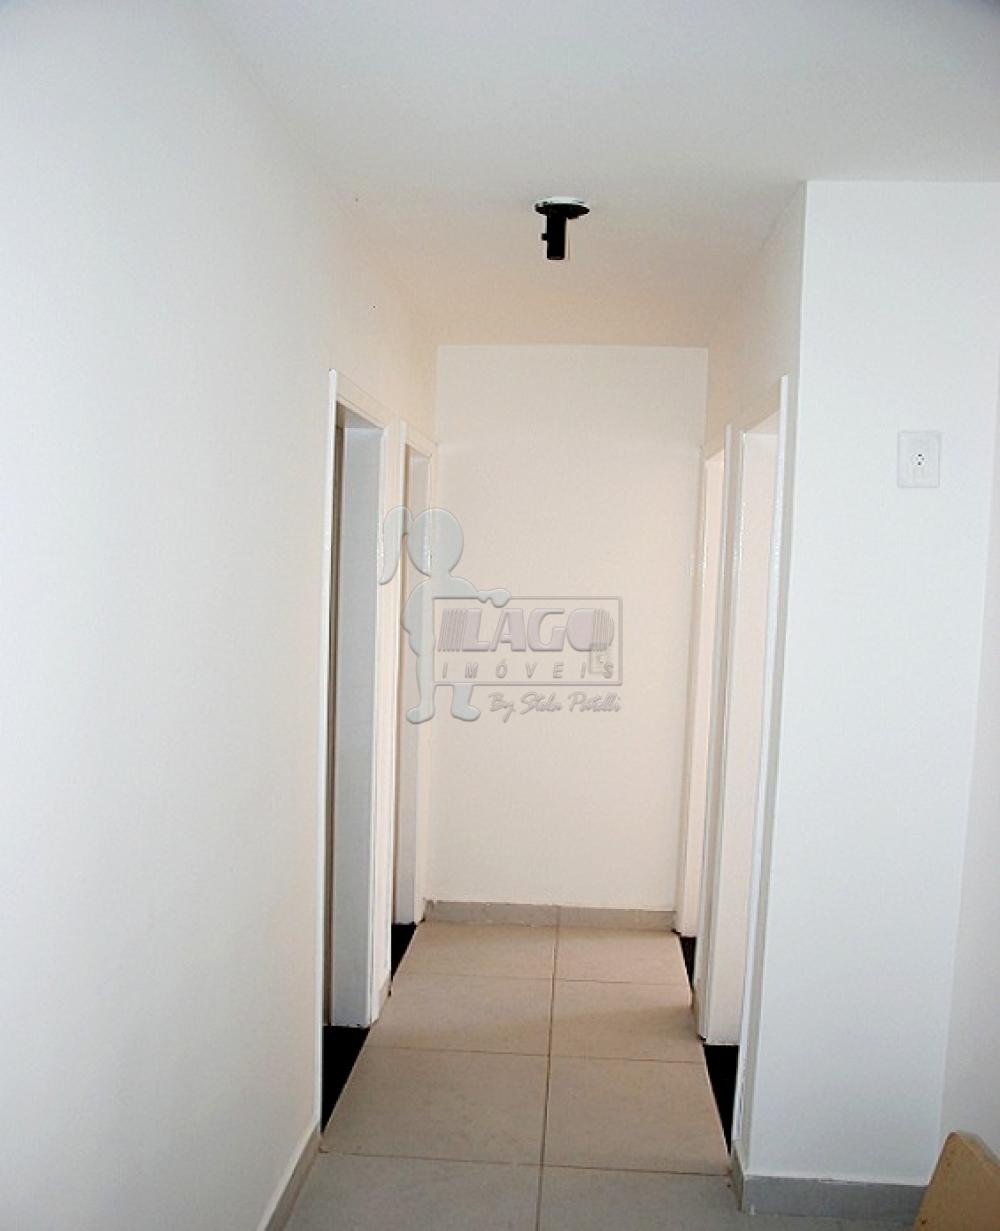 Comprar Apartamentos / Padrão em Ribeirão Preto R$ 255.000,00 - Foto 4